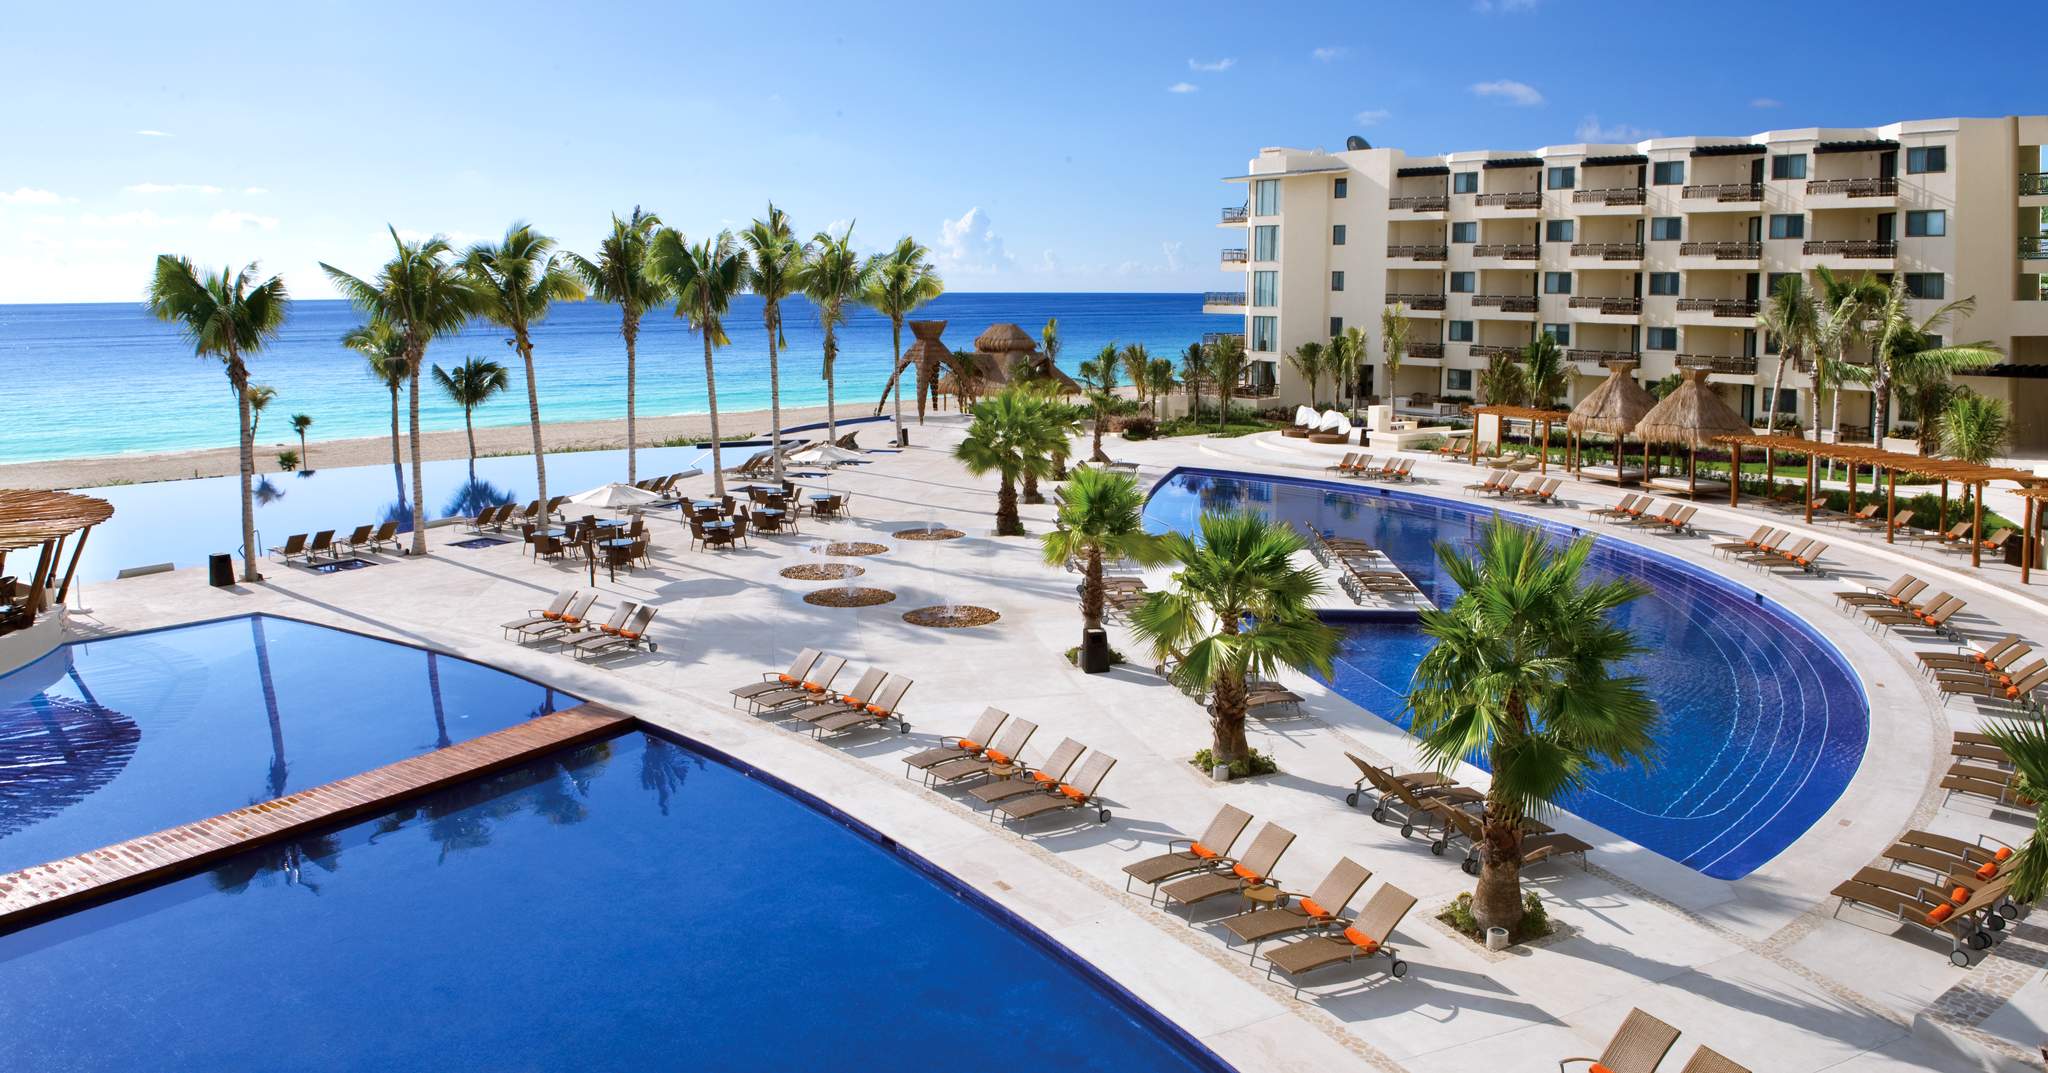 Dreams Riviera Cancun Resort & Spa in Cancun, Mexico - All Inclusive Deals